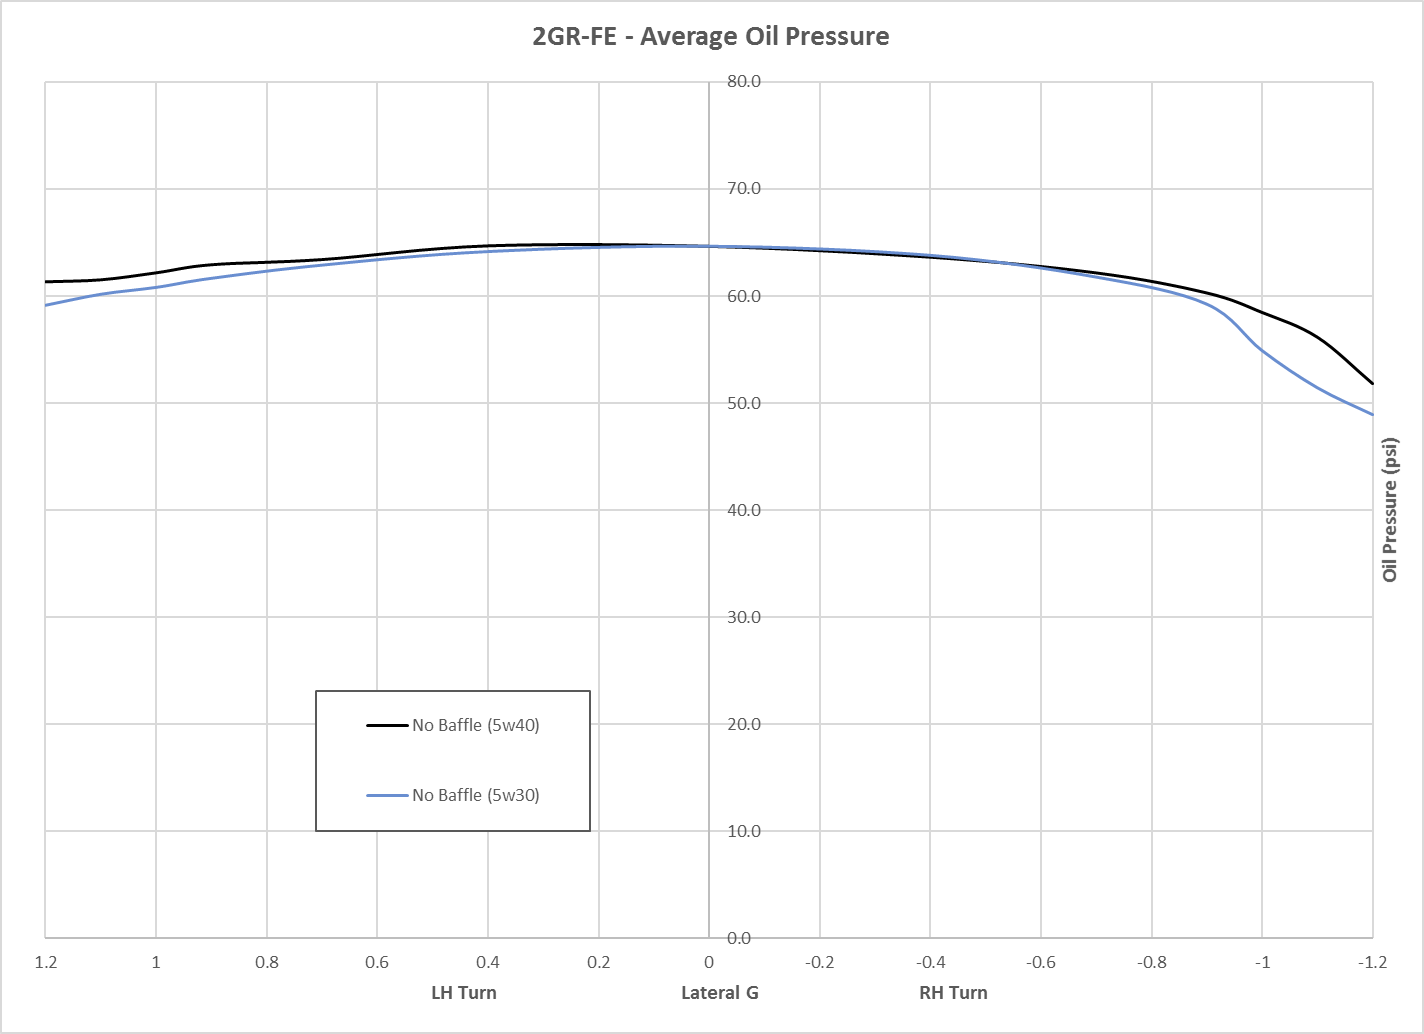 2GR oil pressure, 5w30 vs 5w40